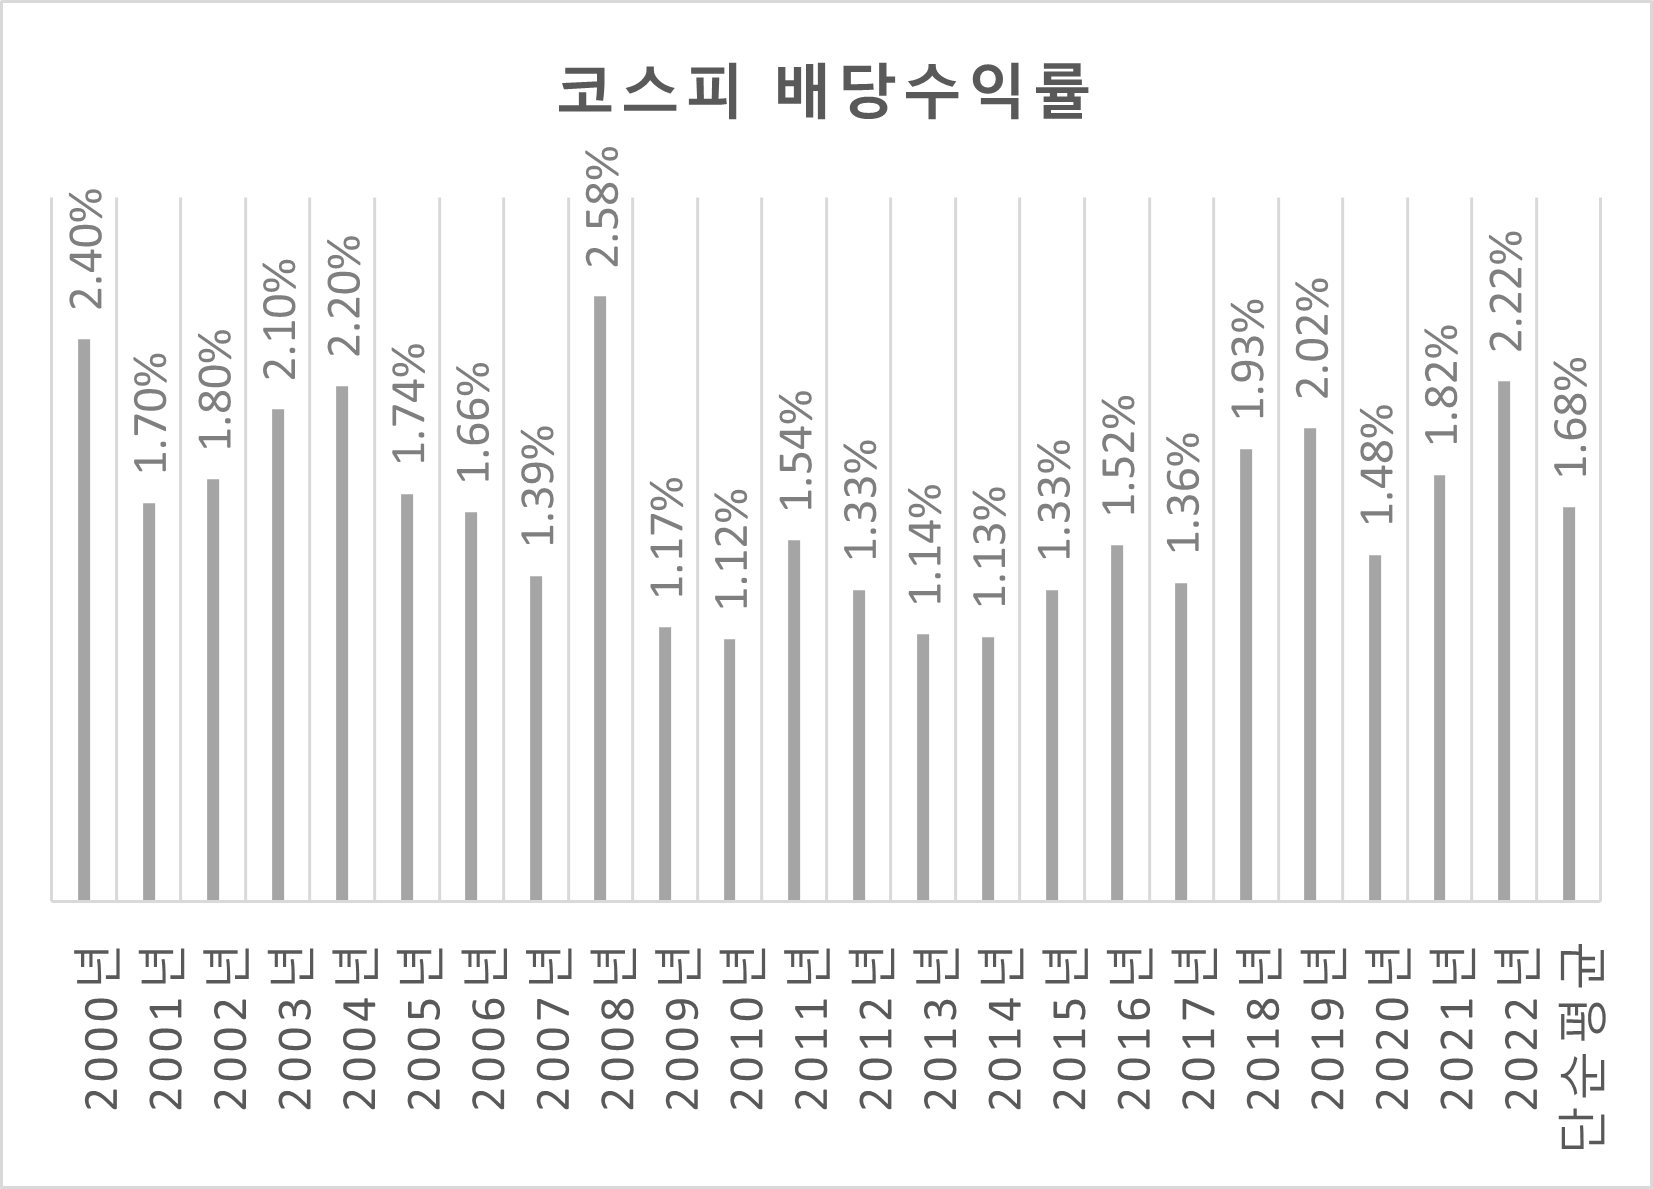 한국 코스피 시장의 2000년 이후 배당수익률과 평균값. 자료 참조: KRX 